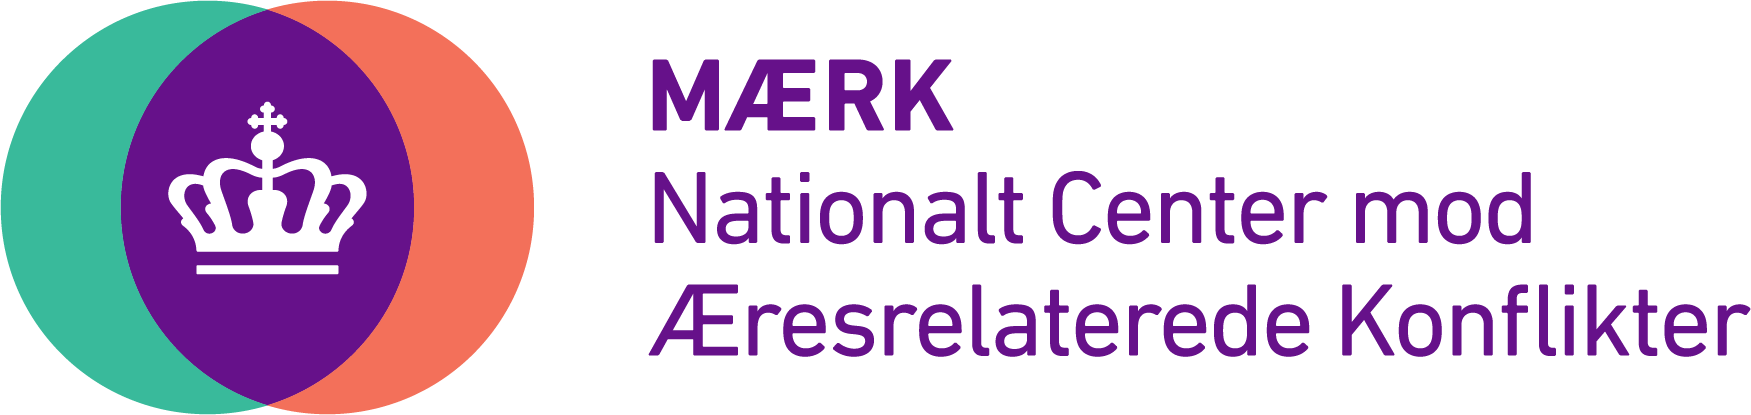 MÆRKs logo